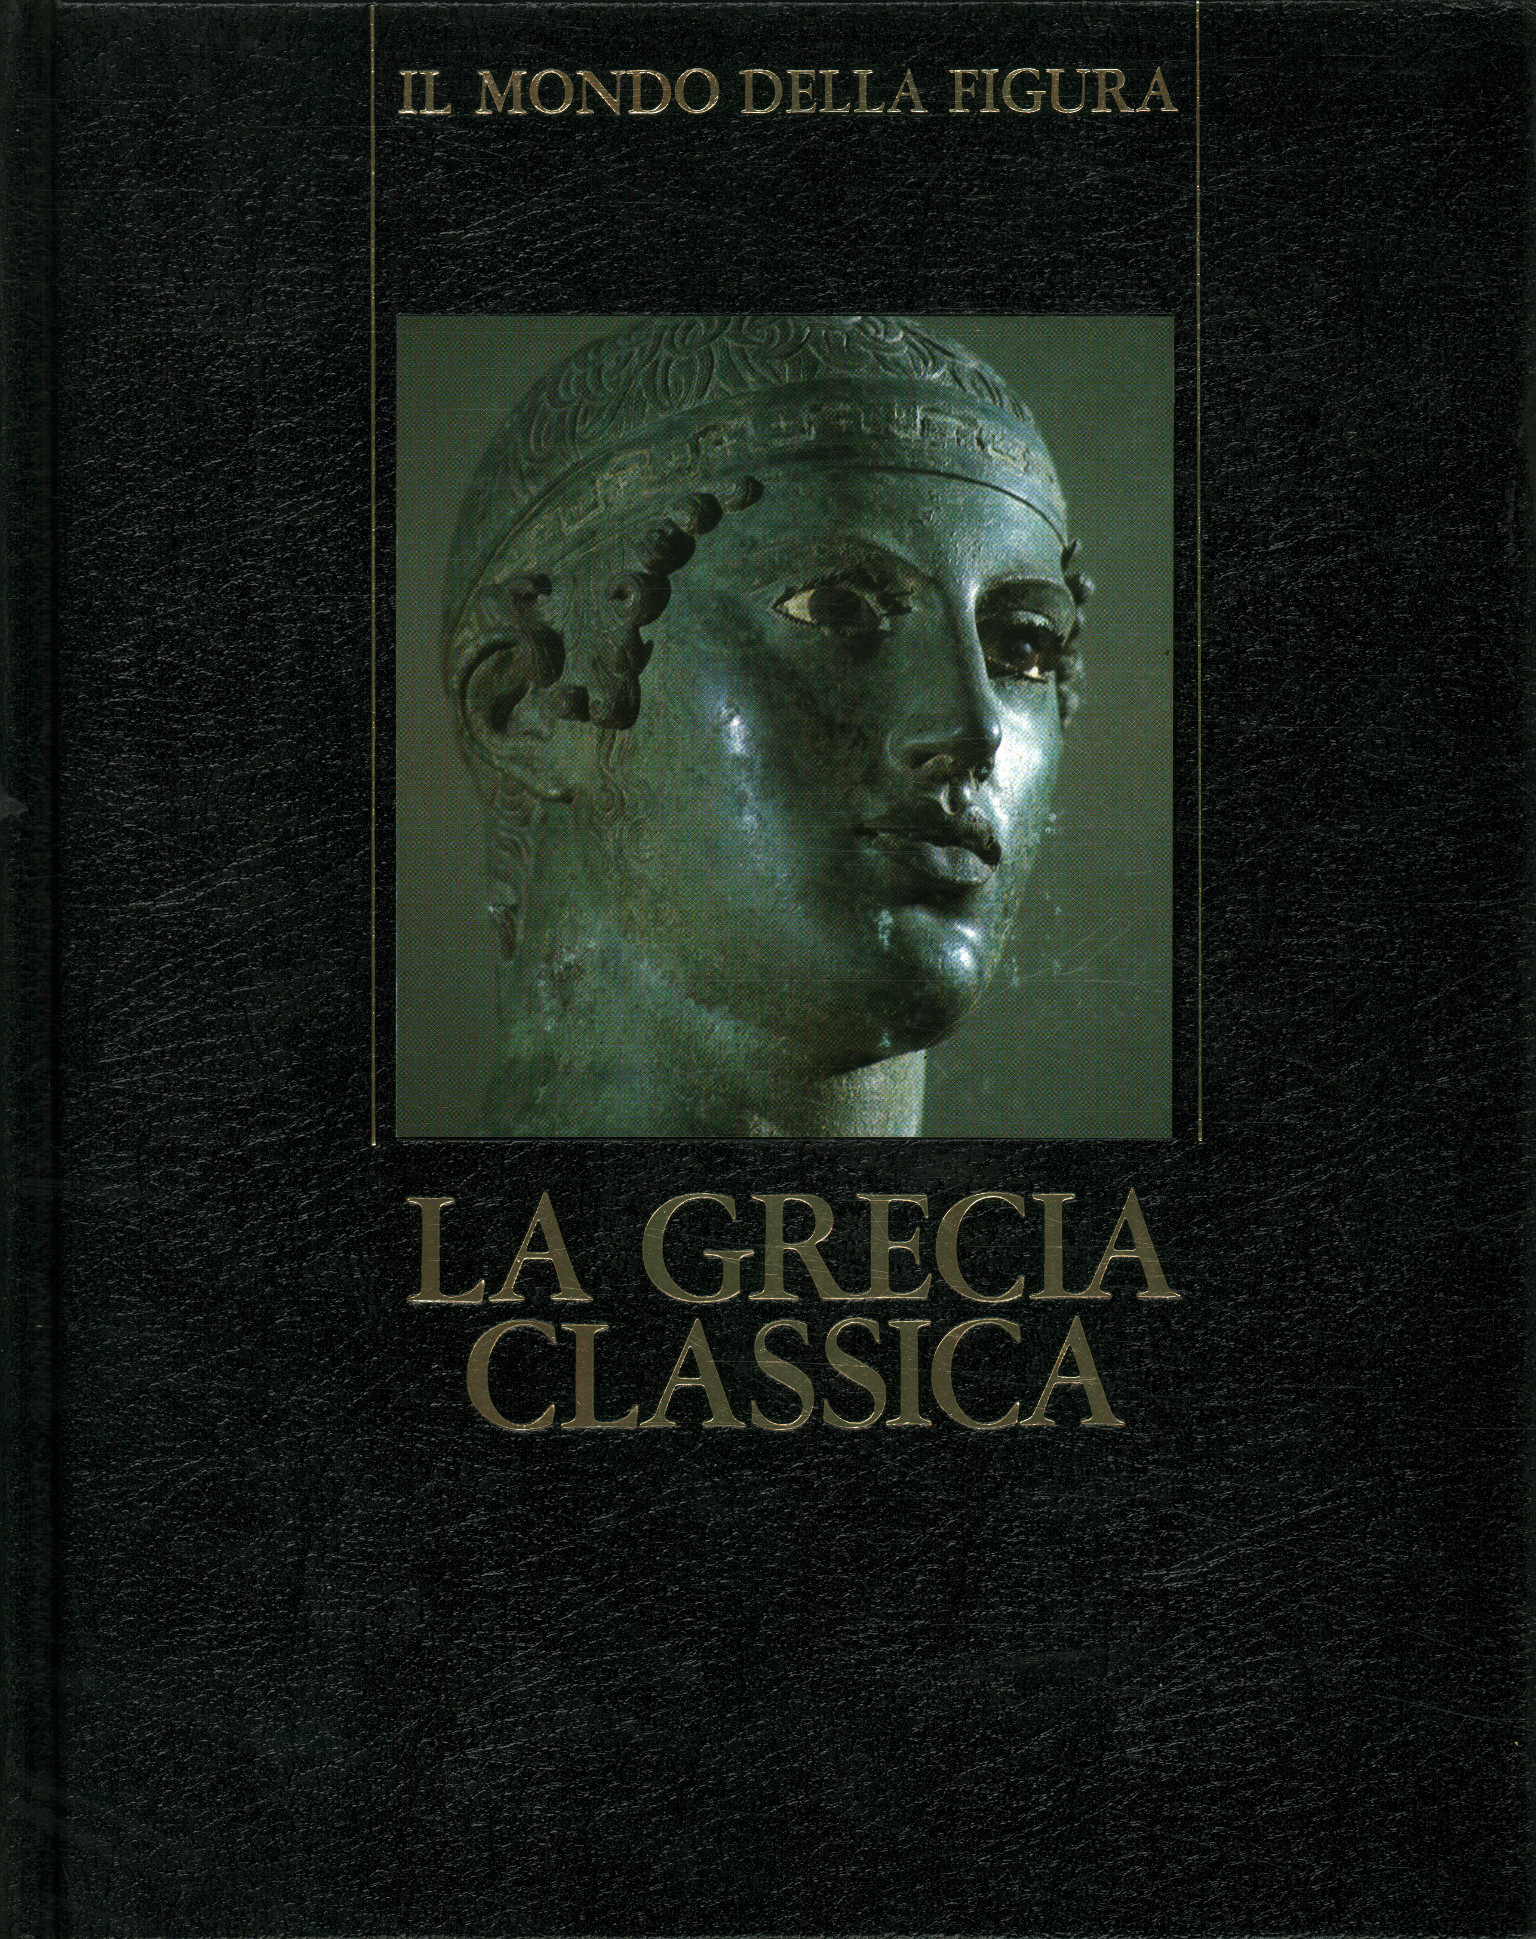 Grecia clásica (480 - 330 a. C.), Grecia clásica (480 - 330 a. C.)